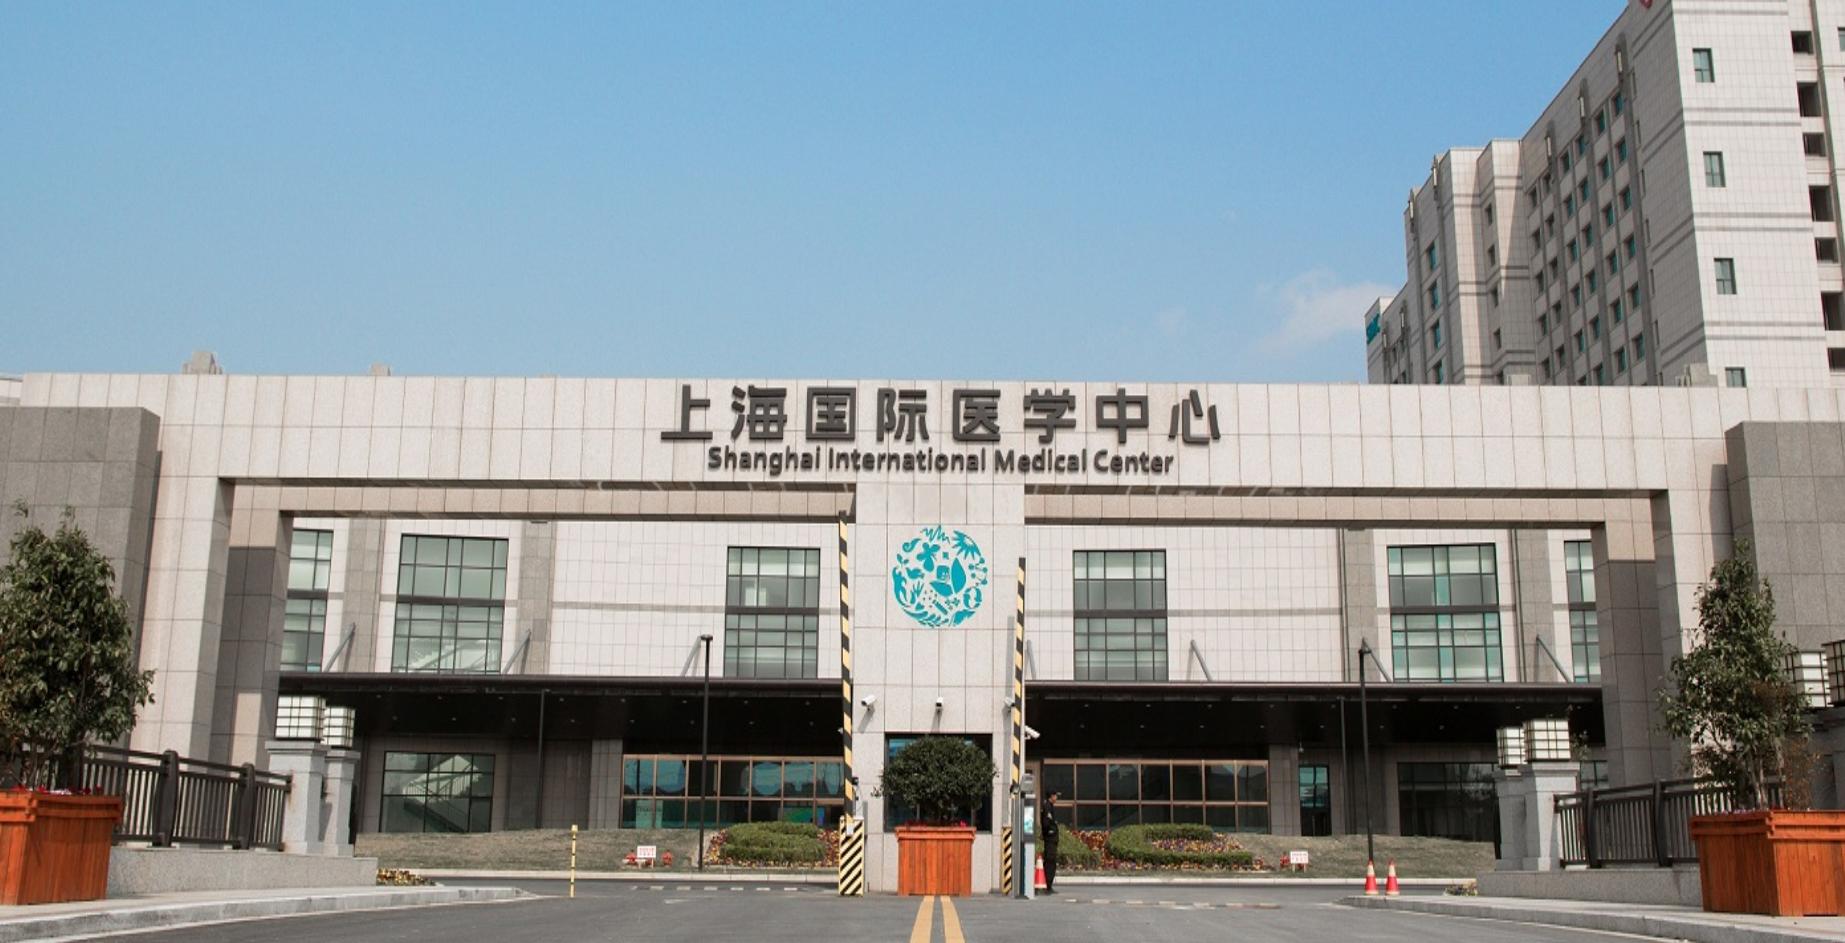 8月17日,未来股份公告称,将通过间接方式拿下上海国际医学中心有限